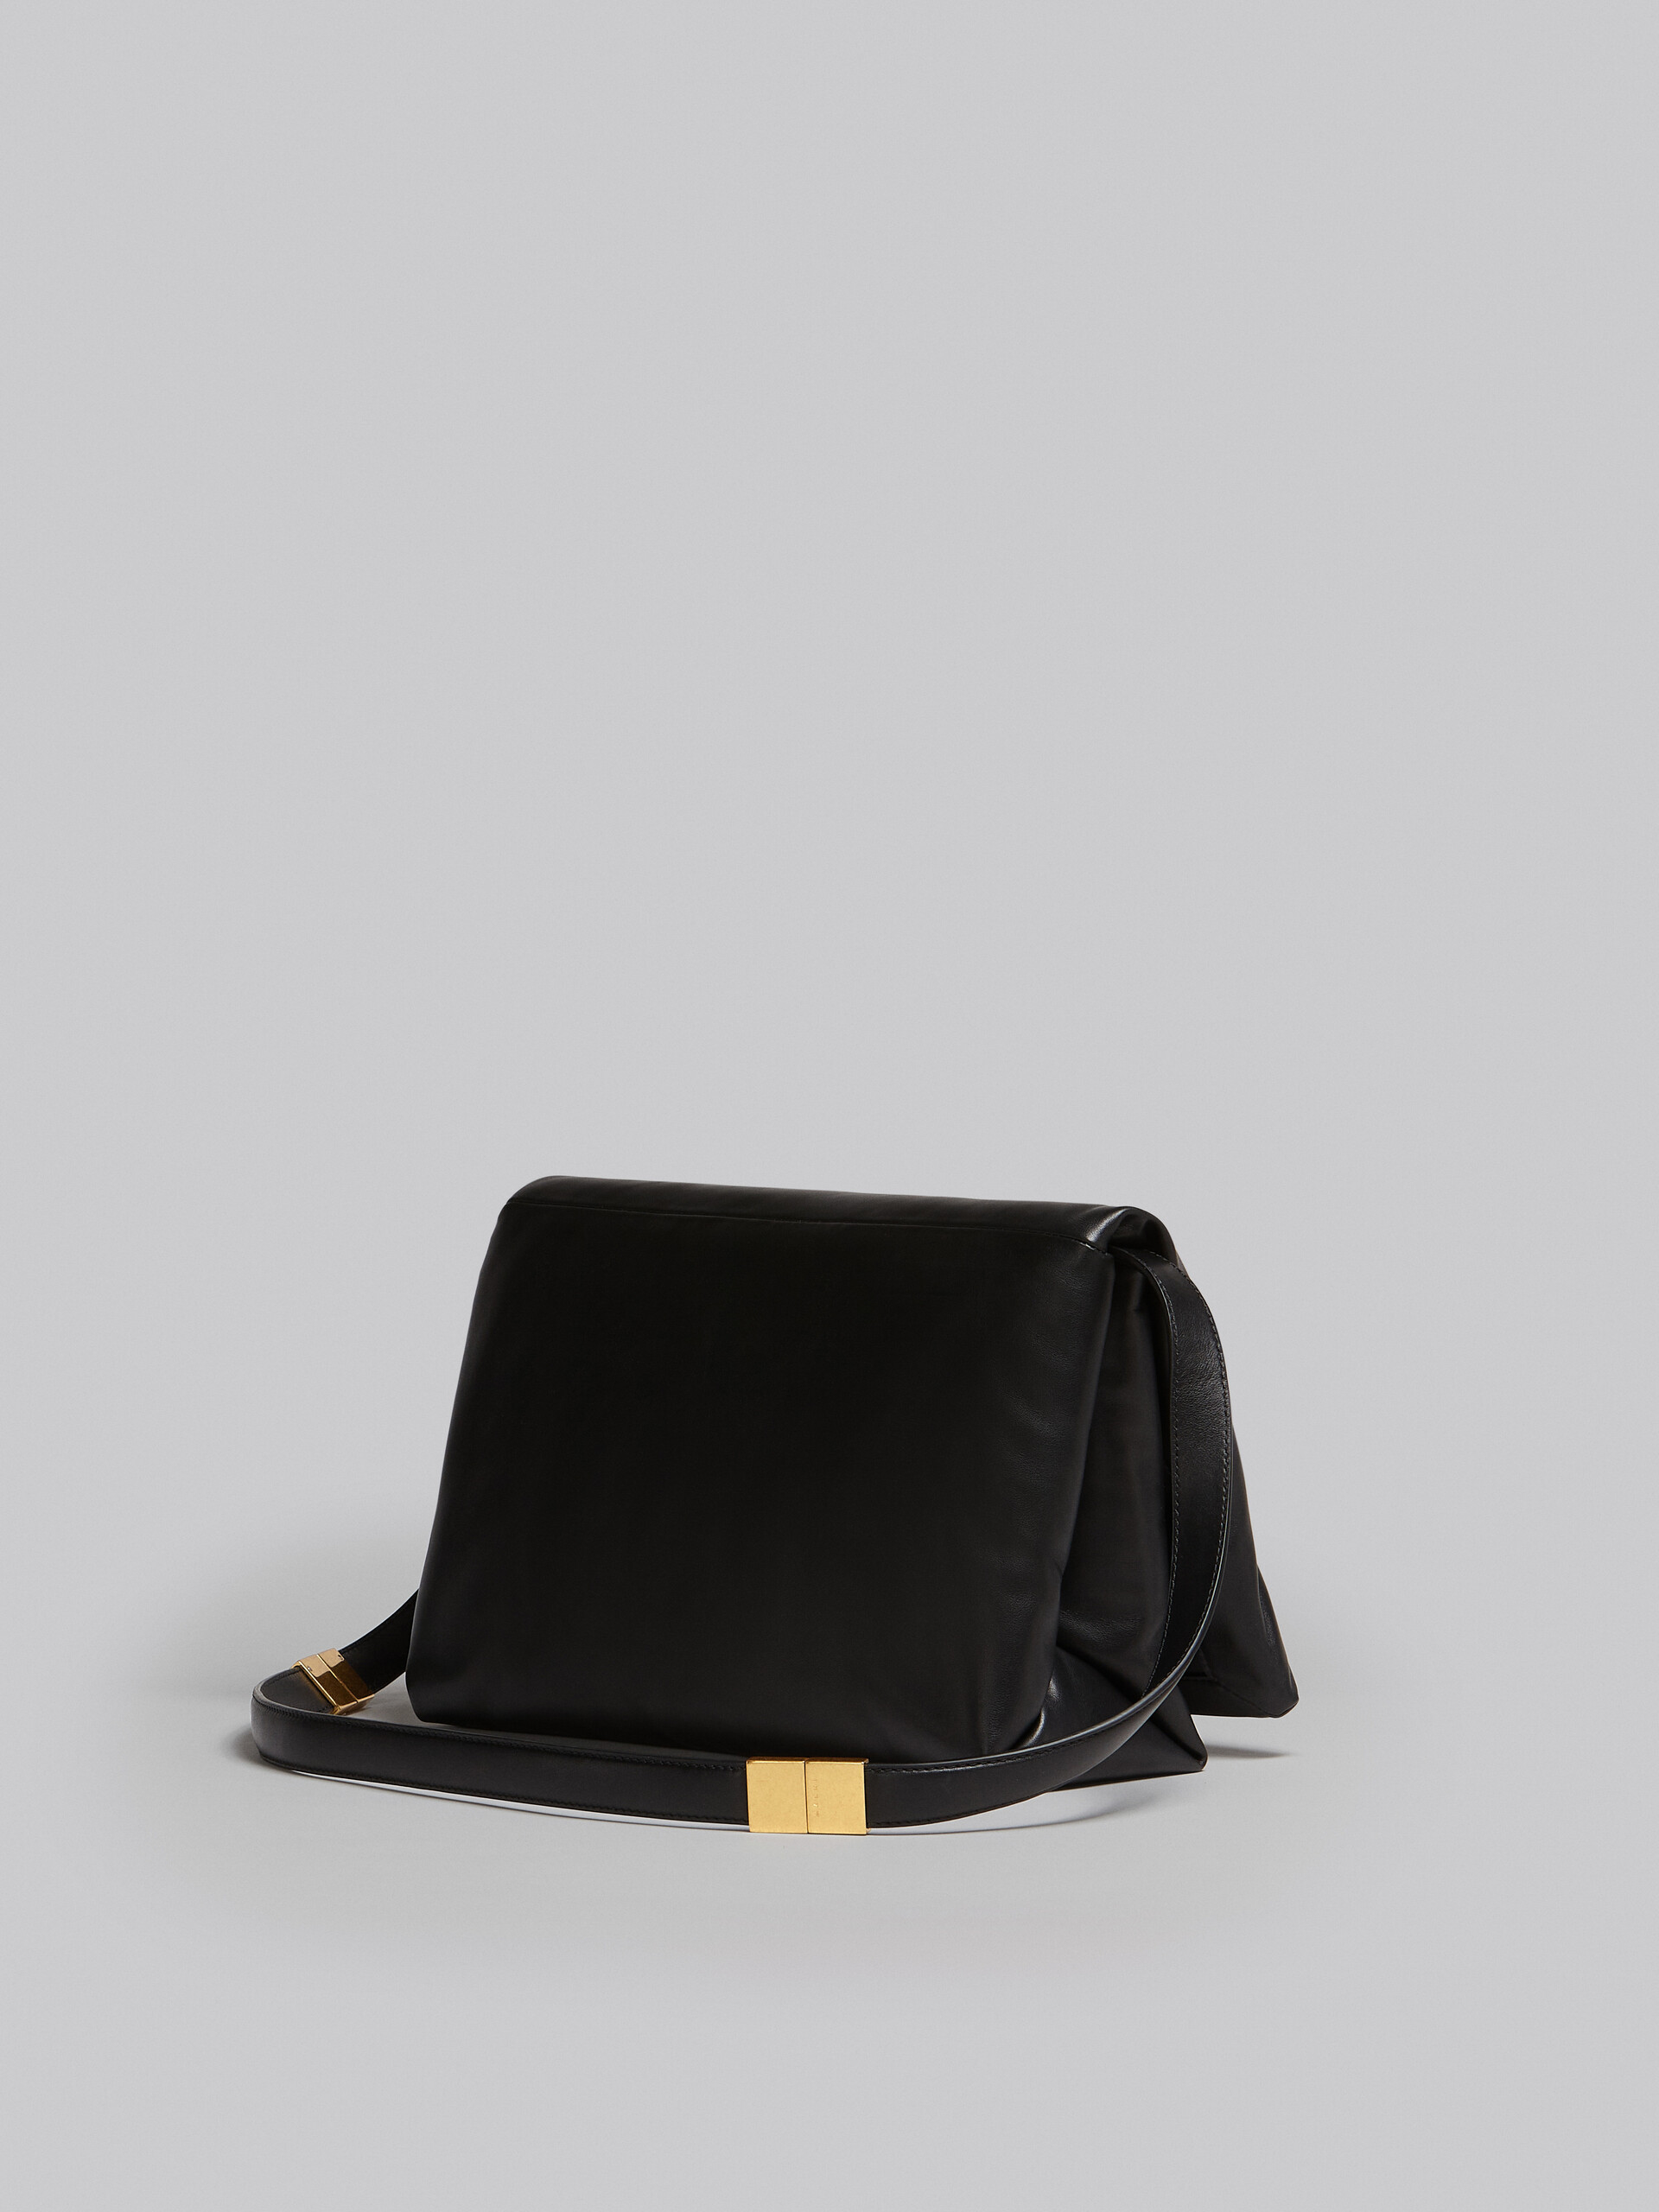 Large black calsfkin Prisma bag - Shoulder Bag - Image 3